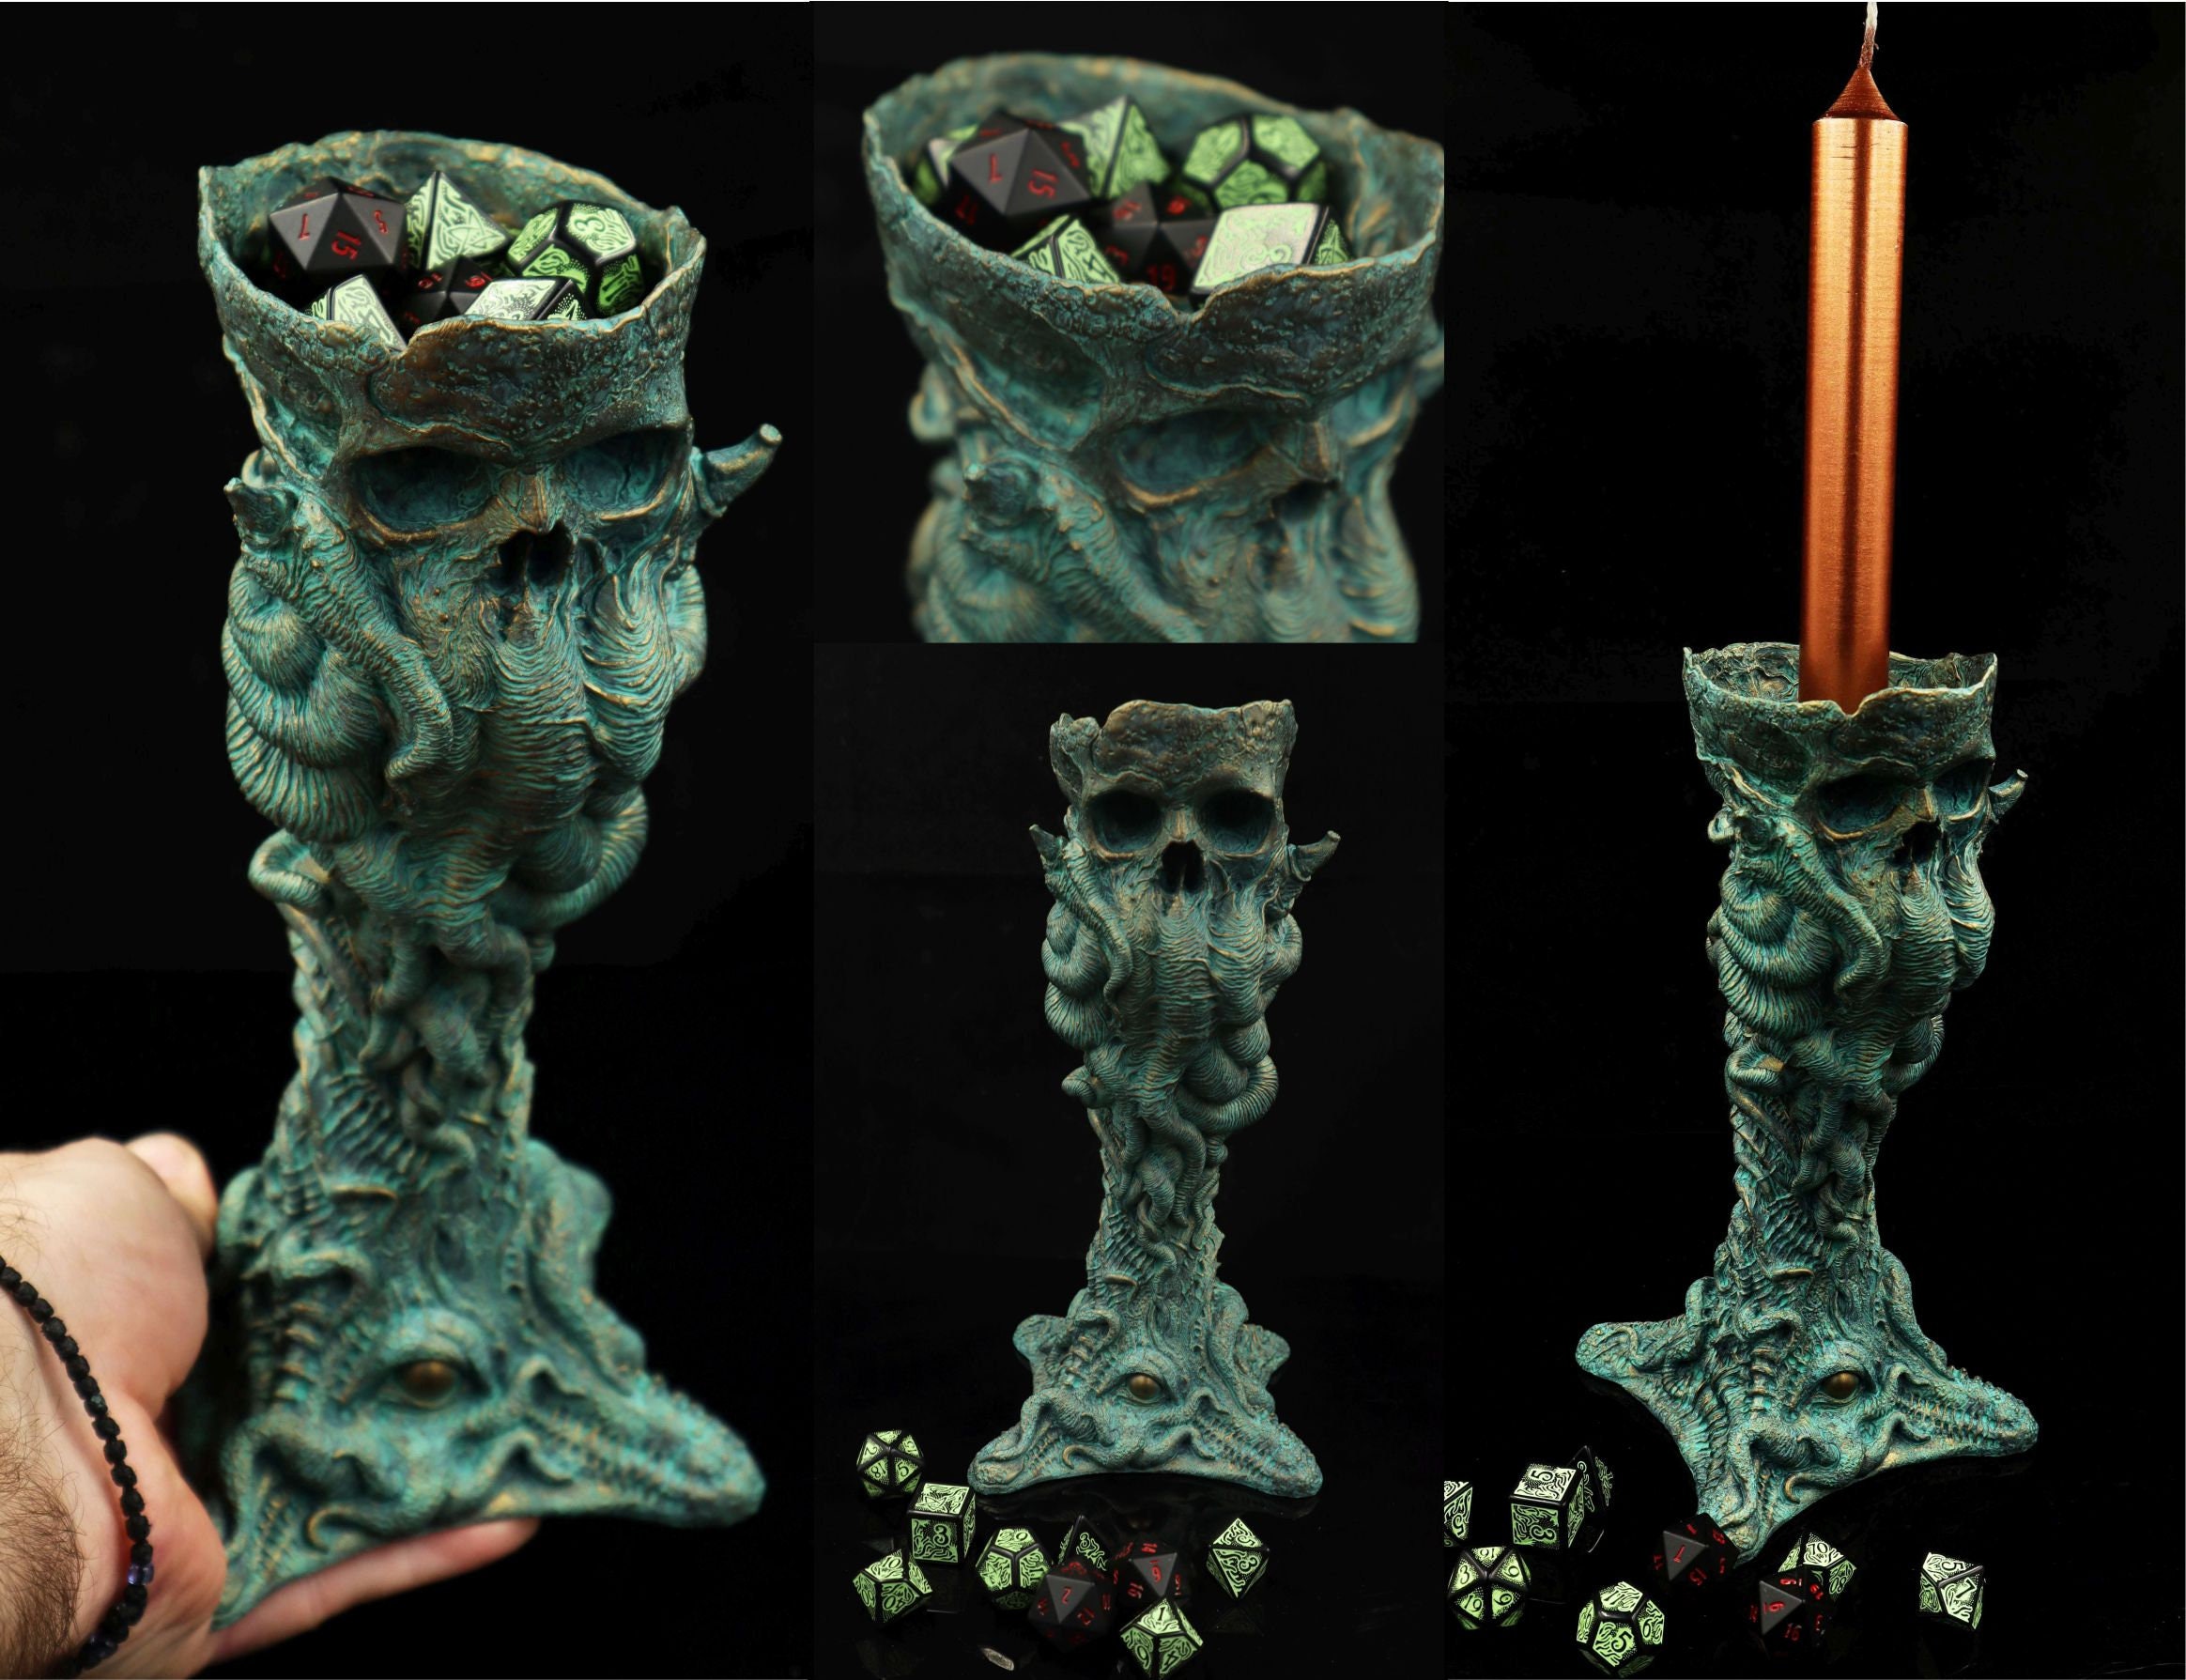 Cthulhu Skull candle holder